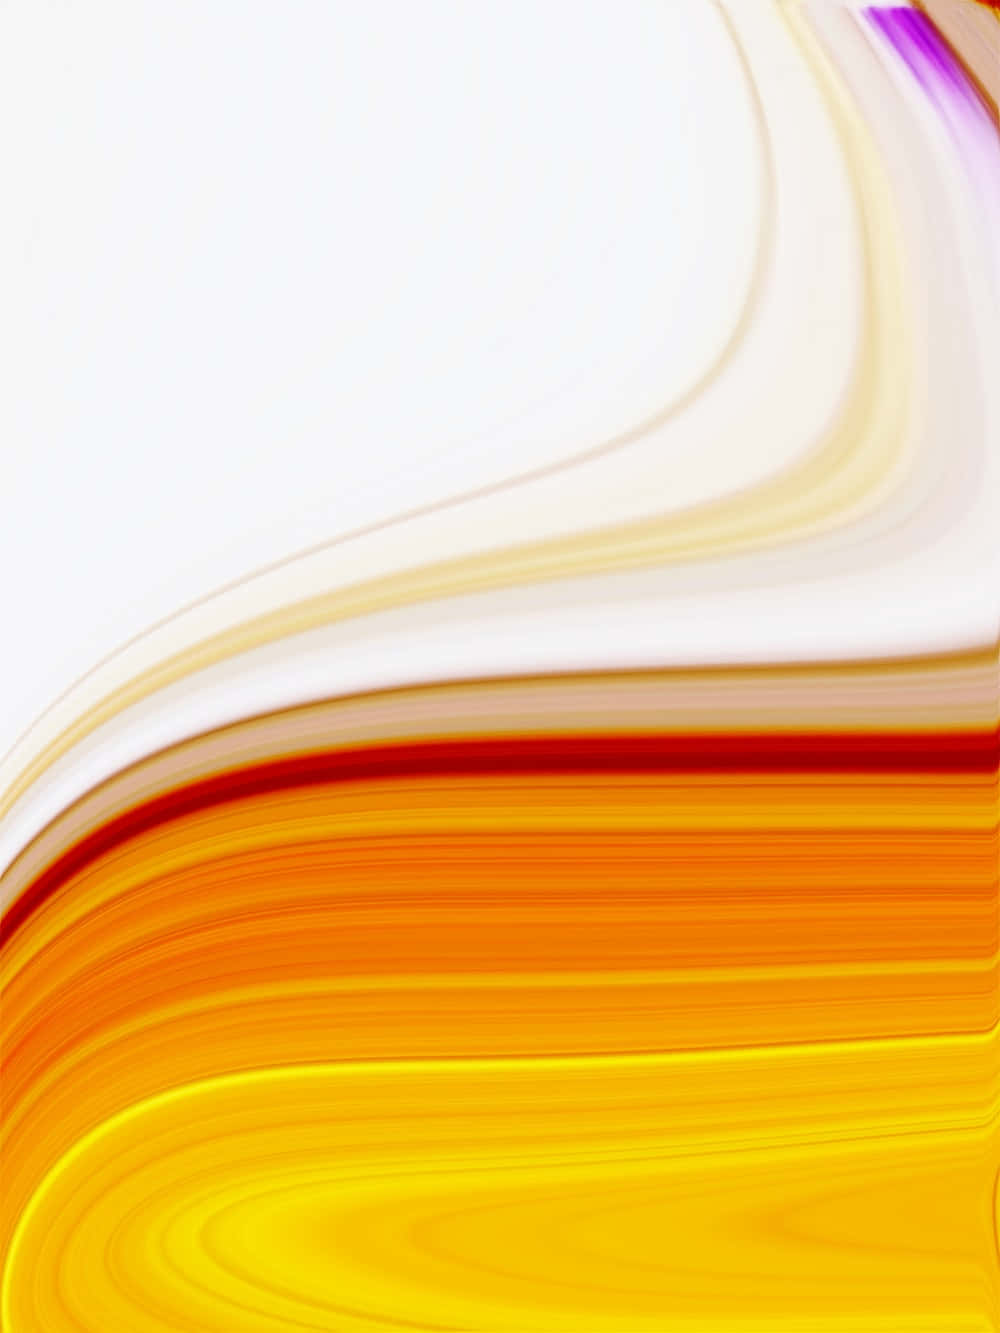 Enfärgstark Abstrakt Bakgrund Med Gul Och Orange Färg